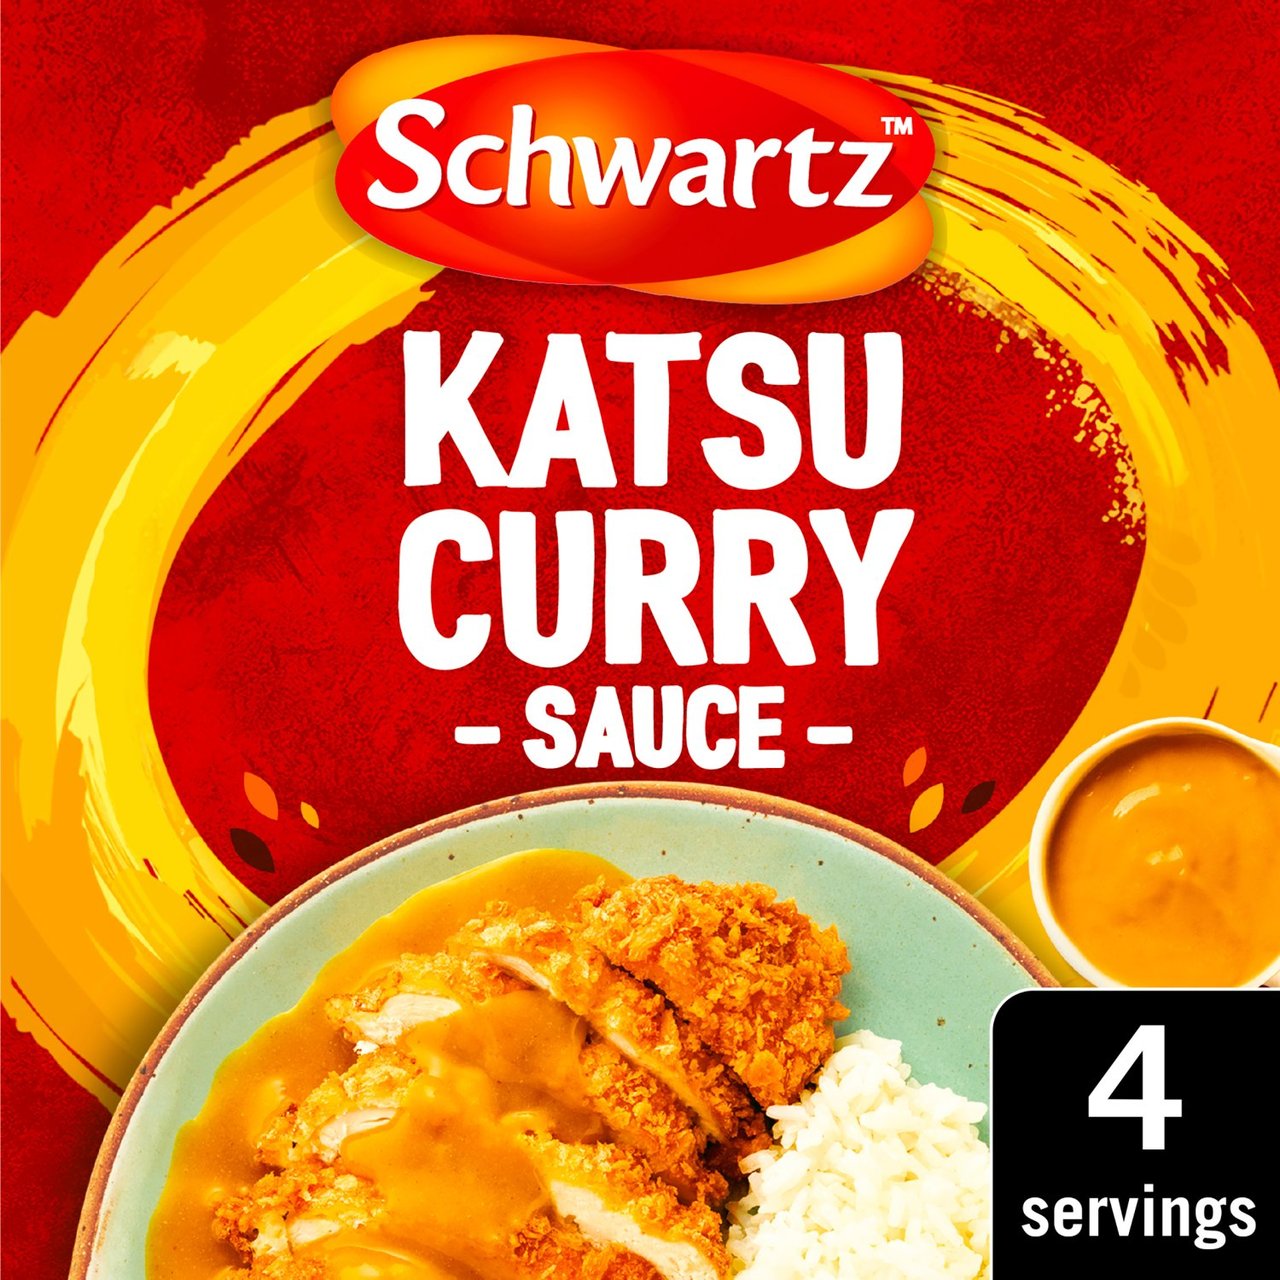 Schwartz Katsu Curry Sauce